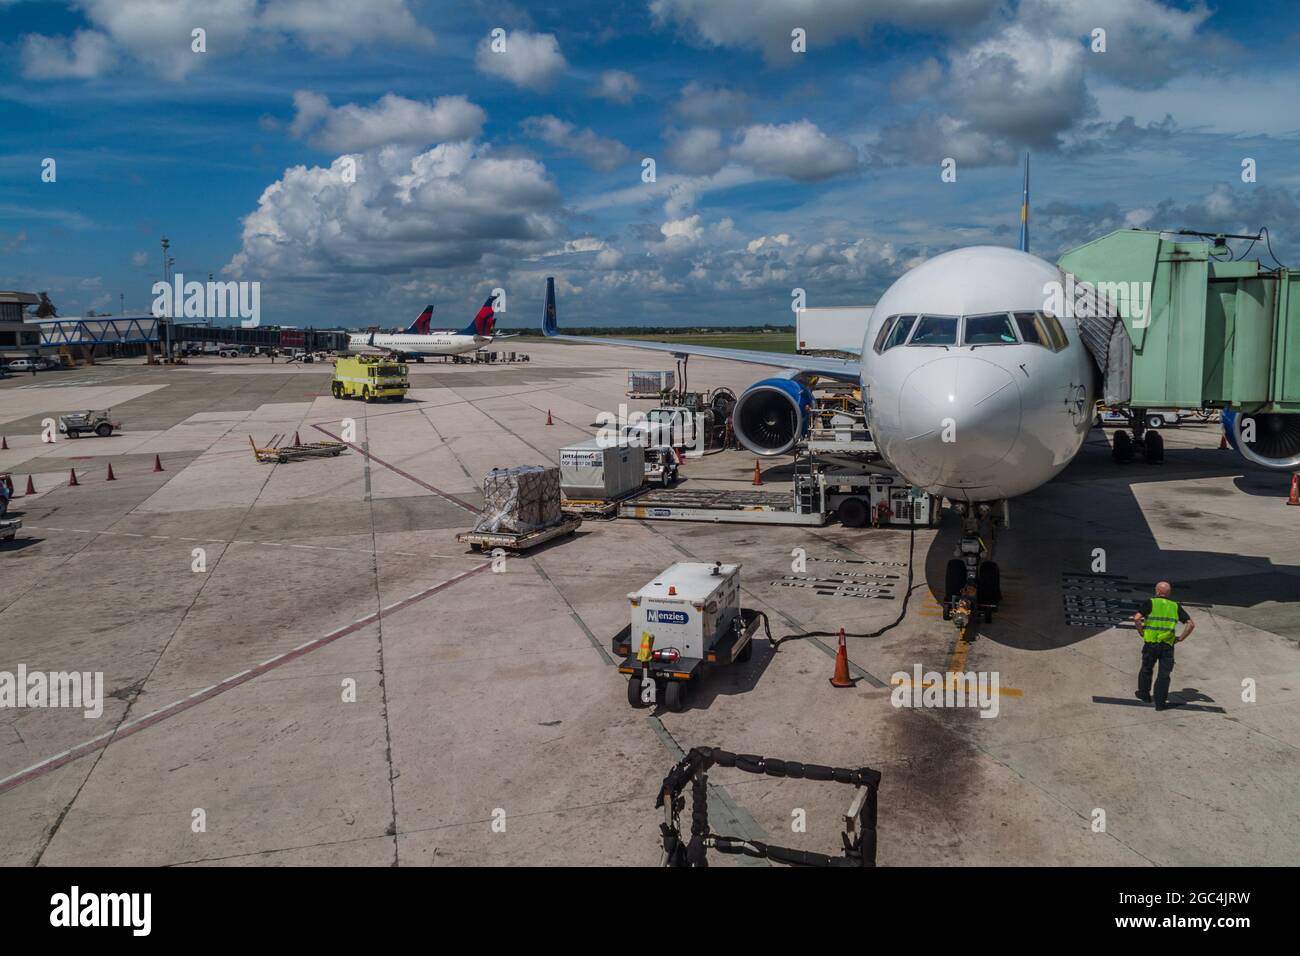 SAINT-DOMINGUE, RÉPUBLIQUE DOMINICAINE - SEP 25, 2015: Avions à l'aéroport international de Las Americas de Saint-Domingue. Banque D'Images